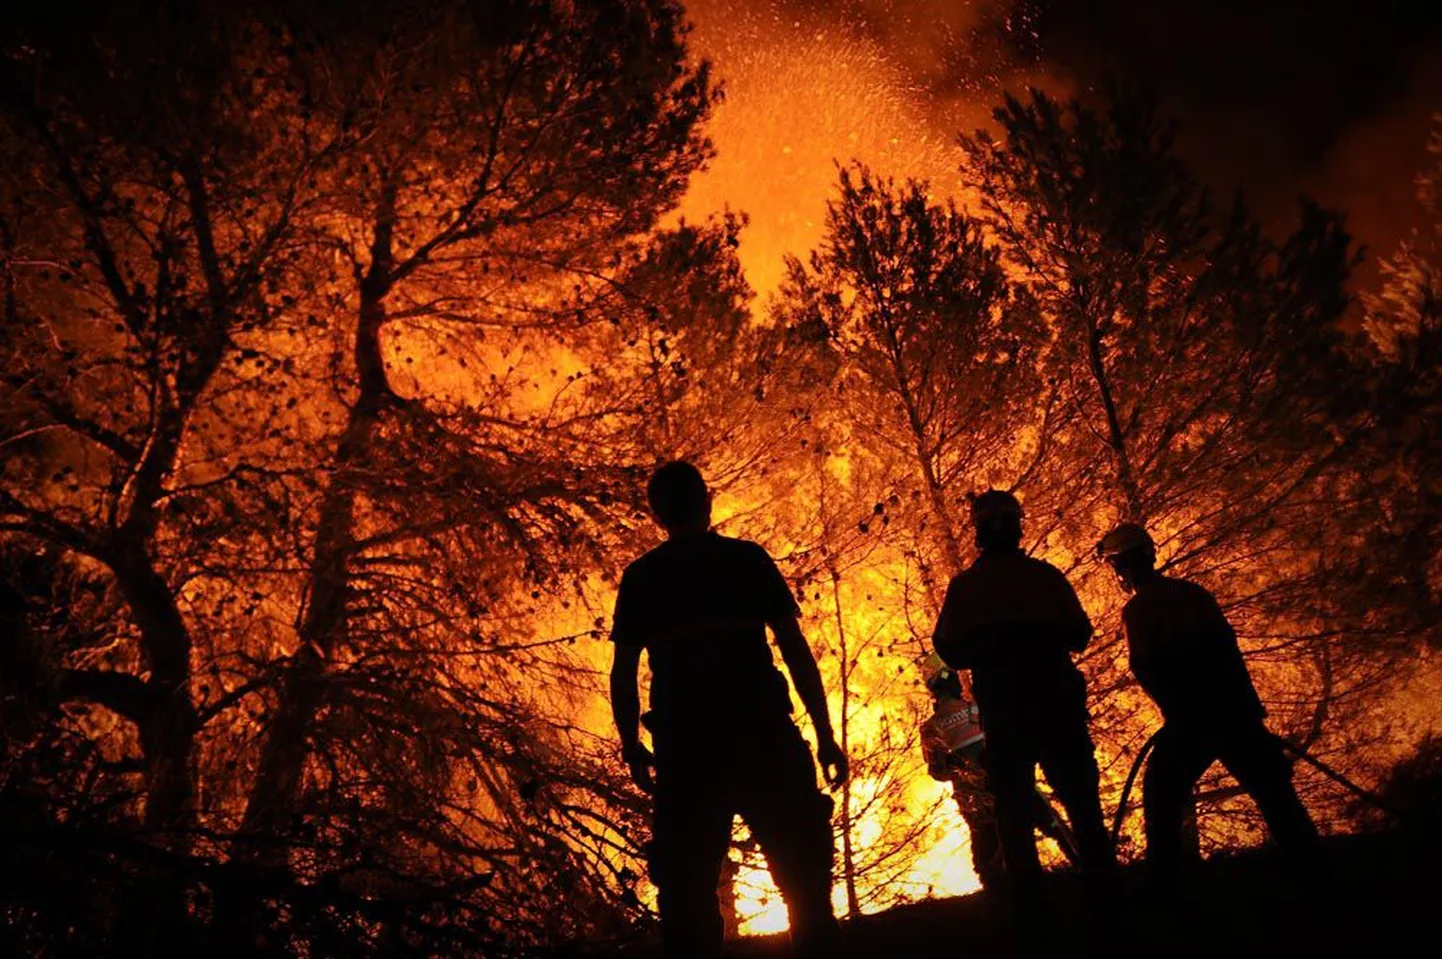 Tuletõrjujad üleeile Hispaanias Alicante lähedal Torre de Macanesis metsatulekahjuga võitlemas.